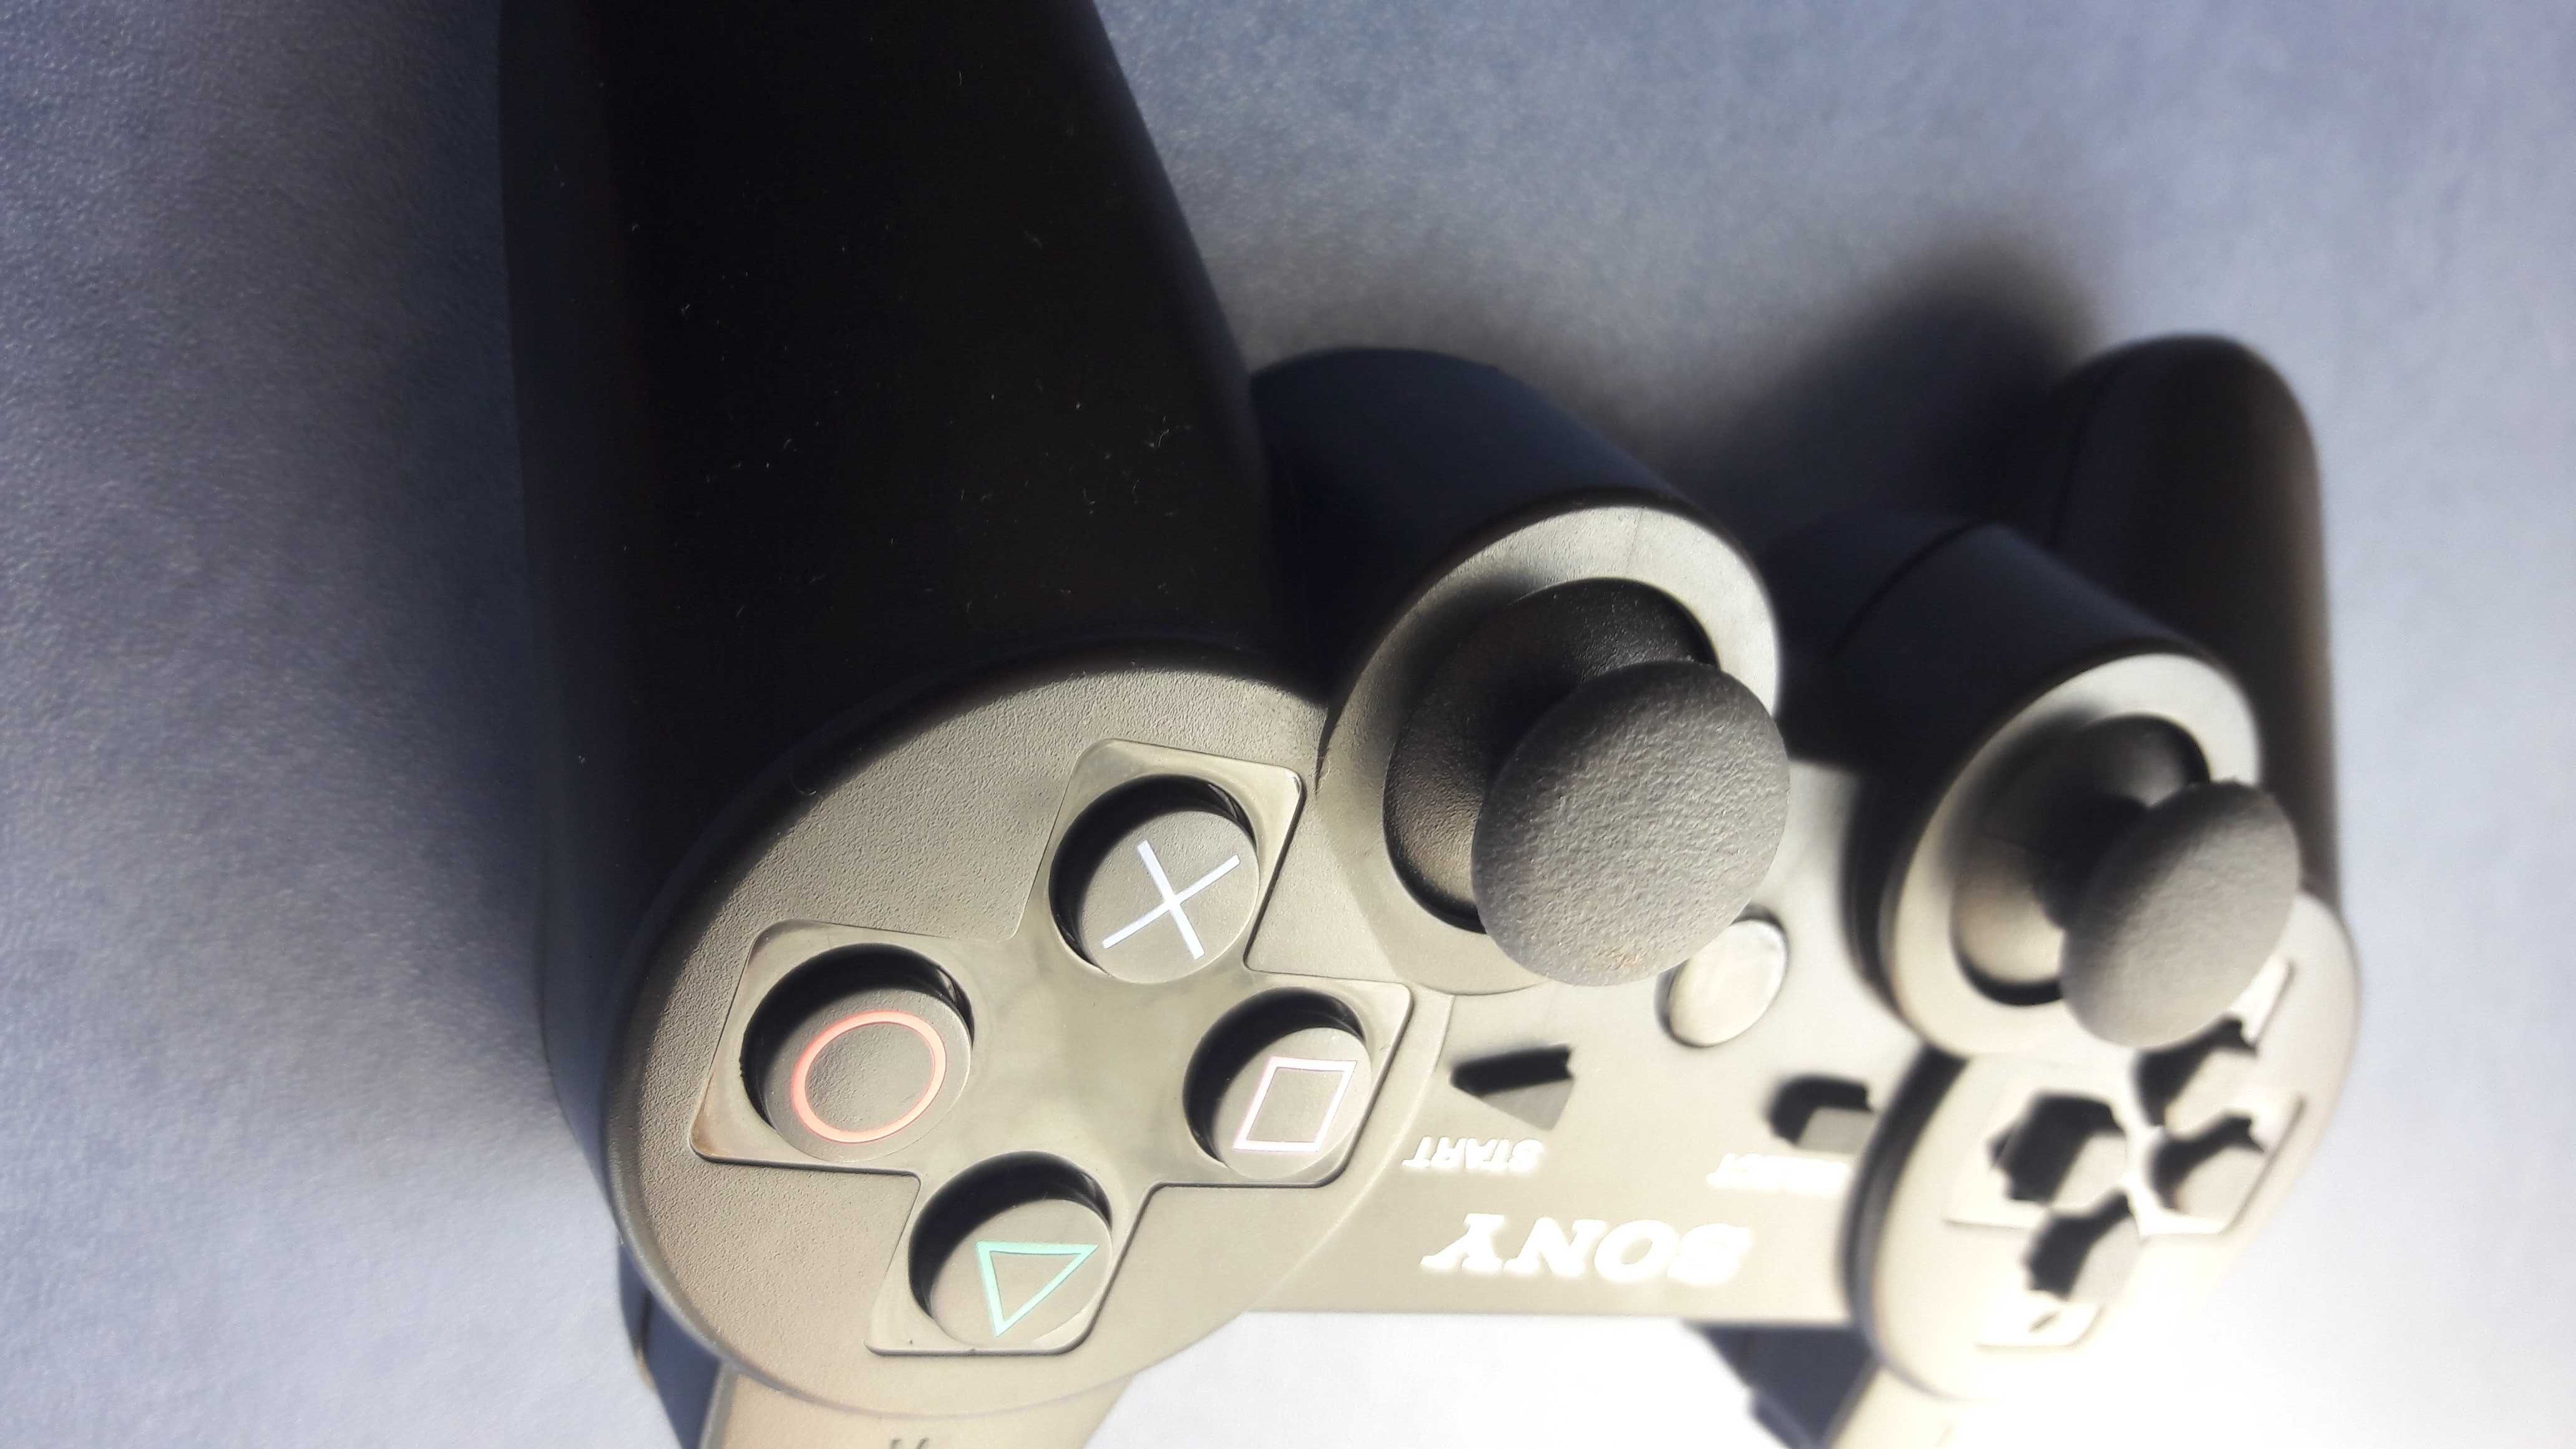 Беспроводной контроллер SONY DualShock 3 для PlayStation